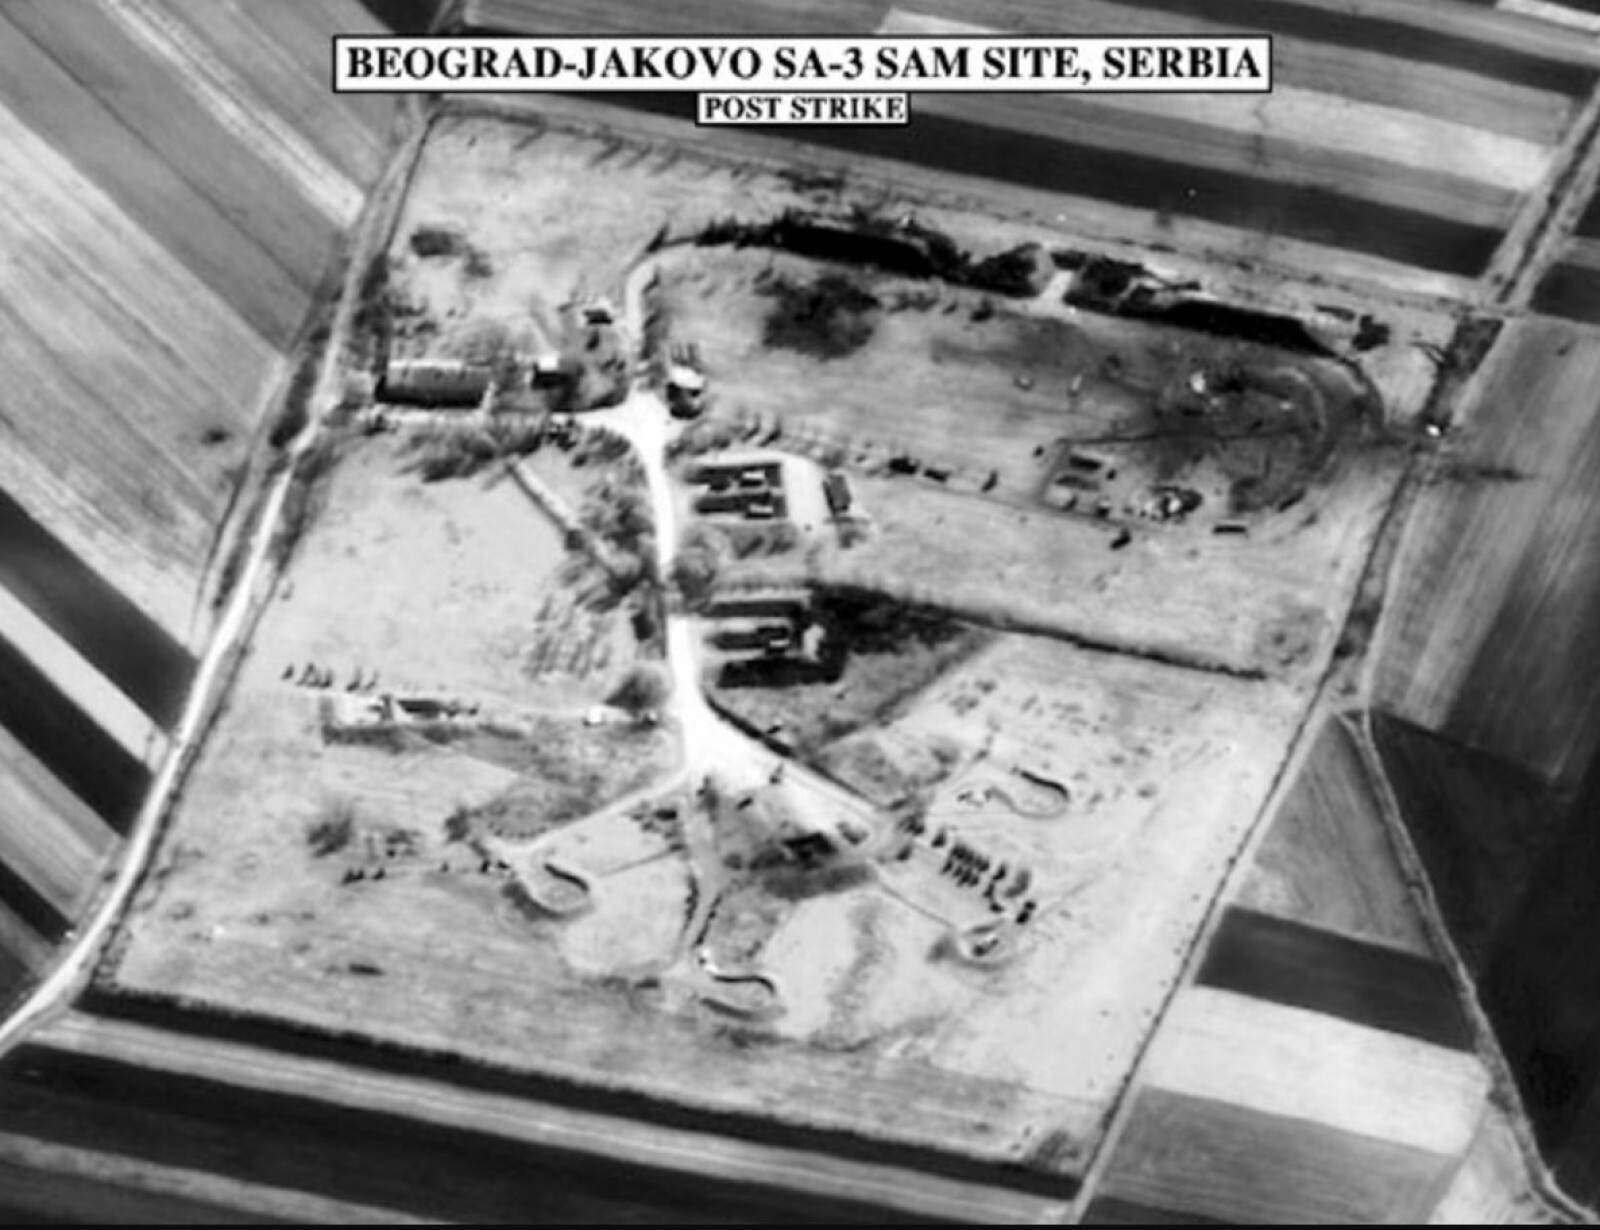 <b>LUFTVERN I GRUS:</b> Først angrep Nato-flyene det serbiske, bakkebaserte luftvernet. Nato-pilotene fryktet missilene av typen SA-3 mest.